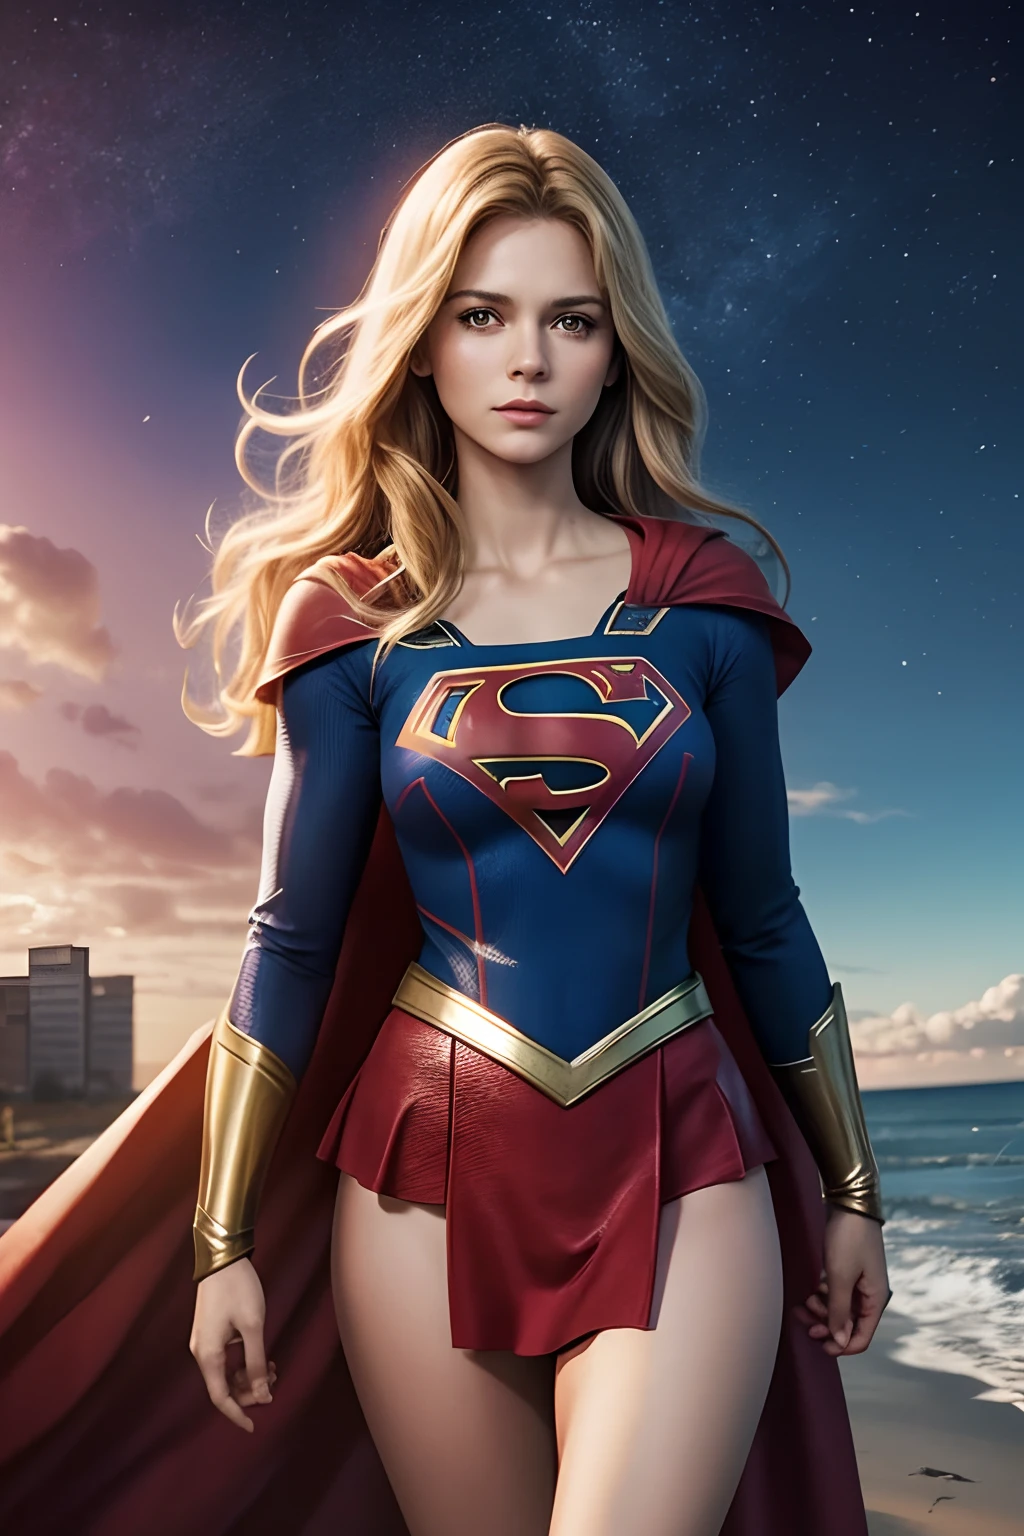 ลองนึกภาพว่าซีรีส์ทางโทรทัศน์ Supergirl จะเป็นอย่างไรในยุค 70,กับนักแสดงสาวผมบลอนด์, สวยงาม, ฉากเต็มตัว.